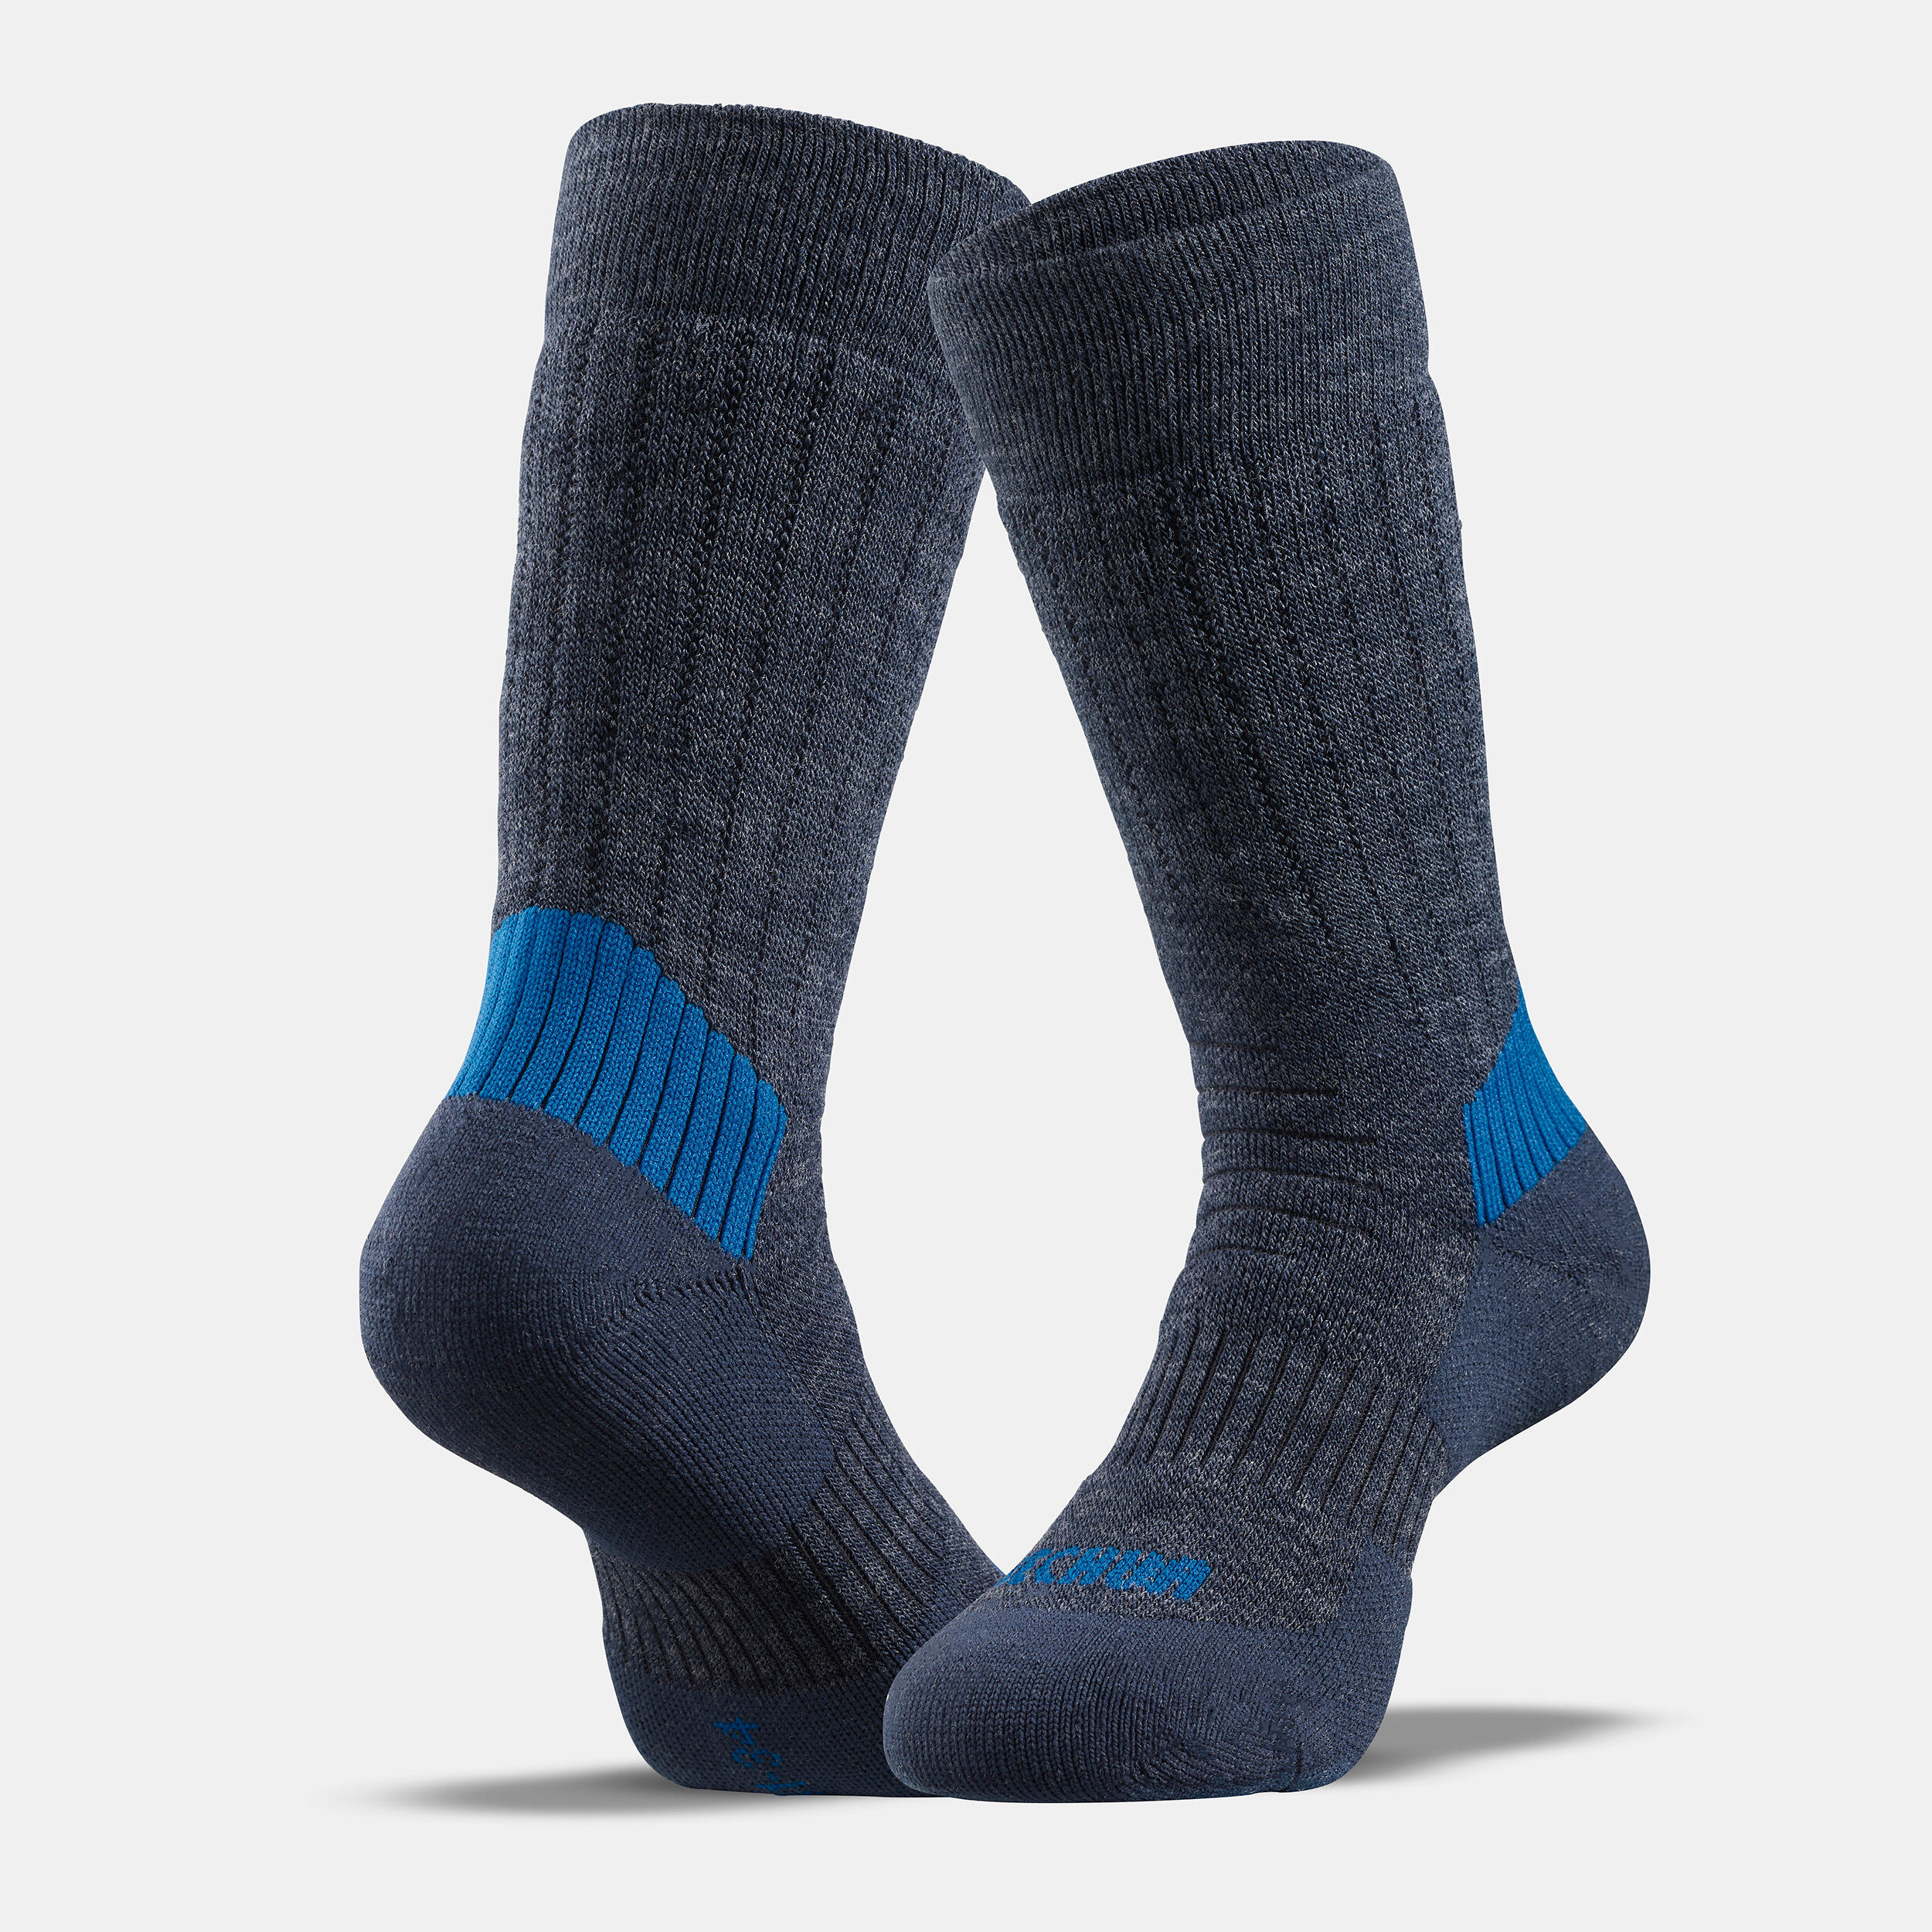 Kids’ Warm Hiking Socks SH100 Mid 2 Pairs 6/9